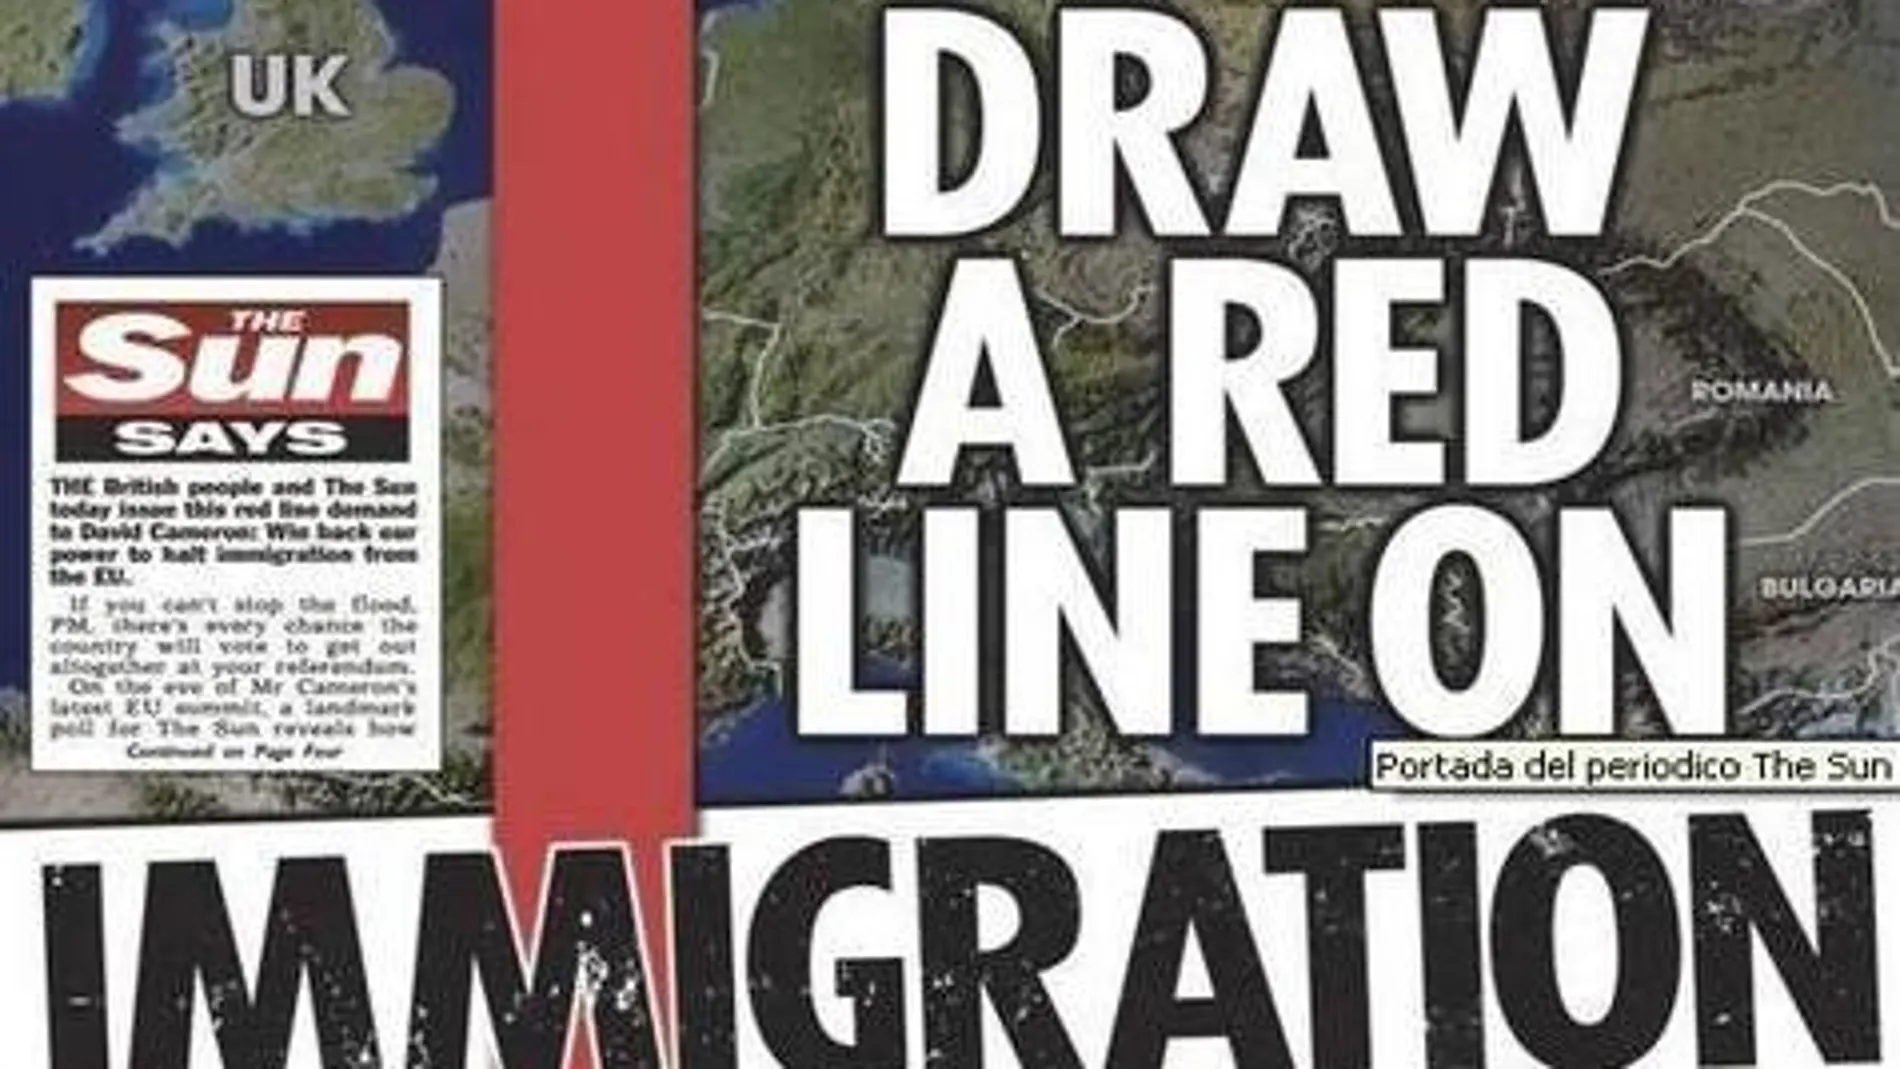 Portada del diario británico "The Sun", cuyo titular «Pinta una línea roja en inmigración» evidencia la intención de contener la inmigración en el Reino Unido a partir de una línea divisoria imaginaria que hace frontera entre el país británico y otros territorios europeos al este